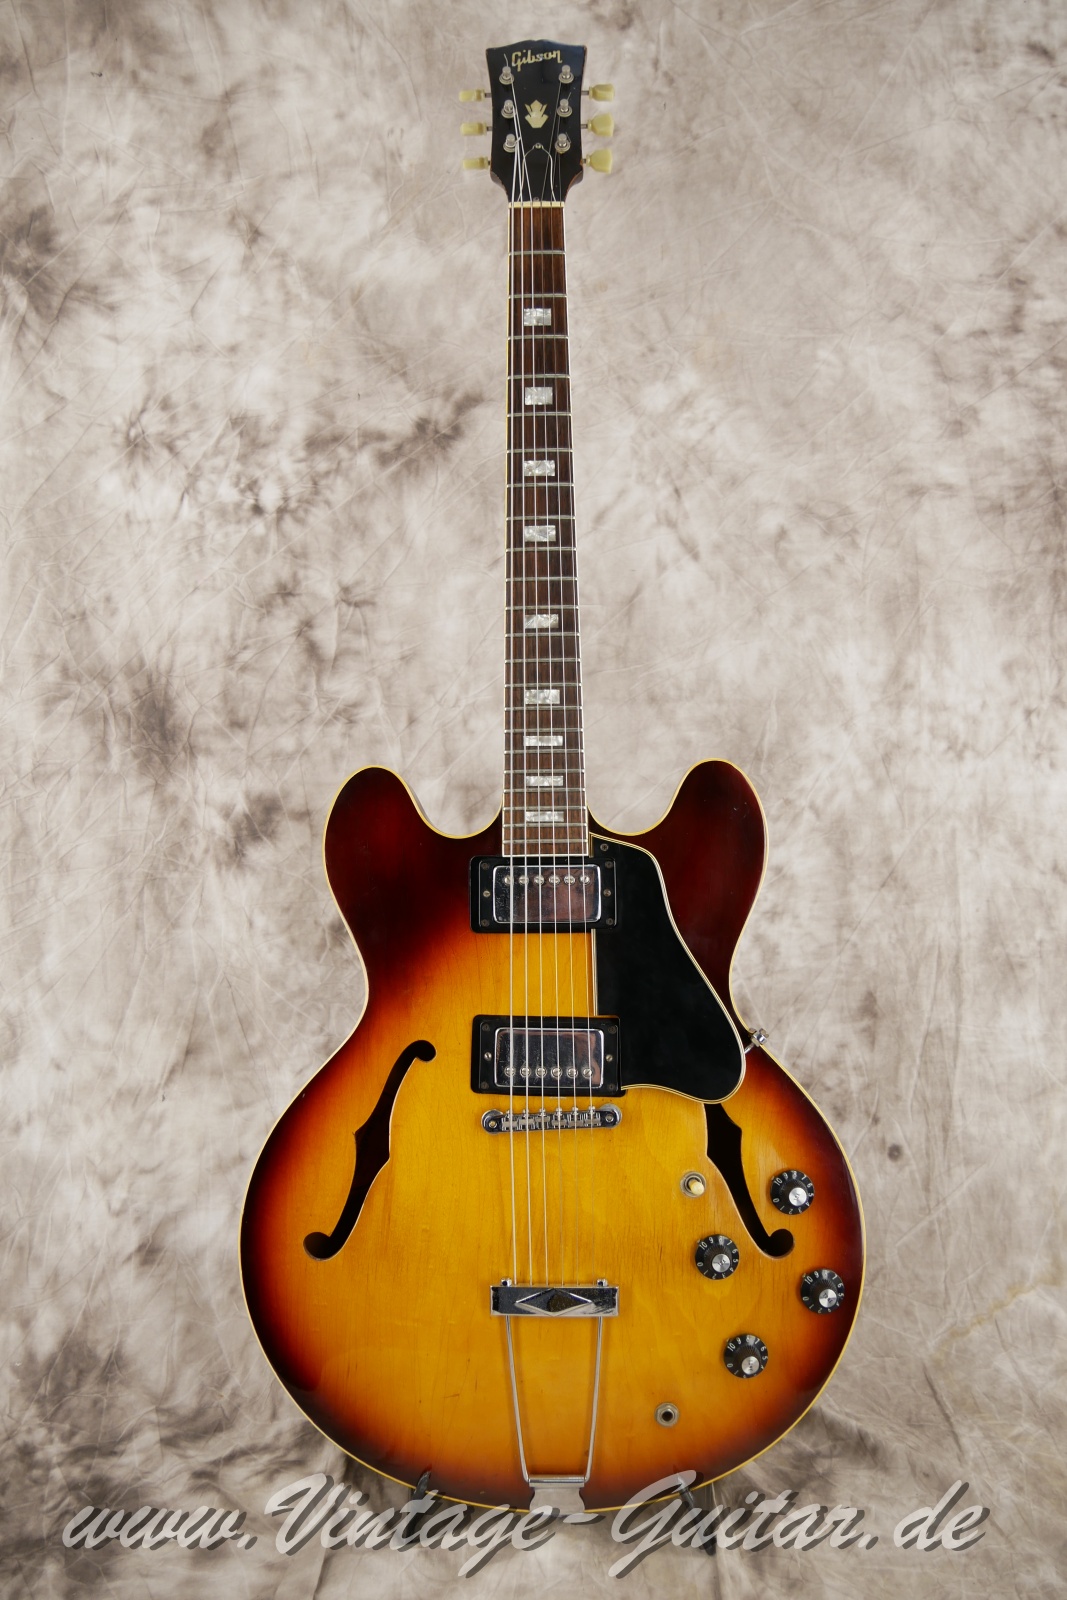 Gibson-ES-335TD-sunburst-1967-001.JPG